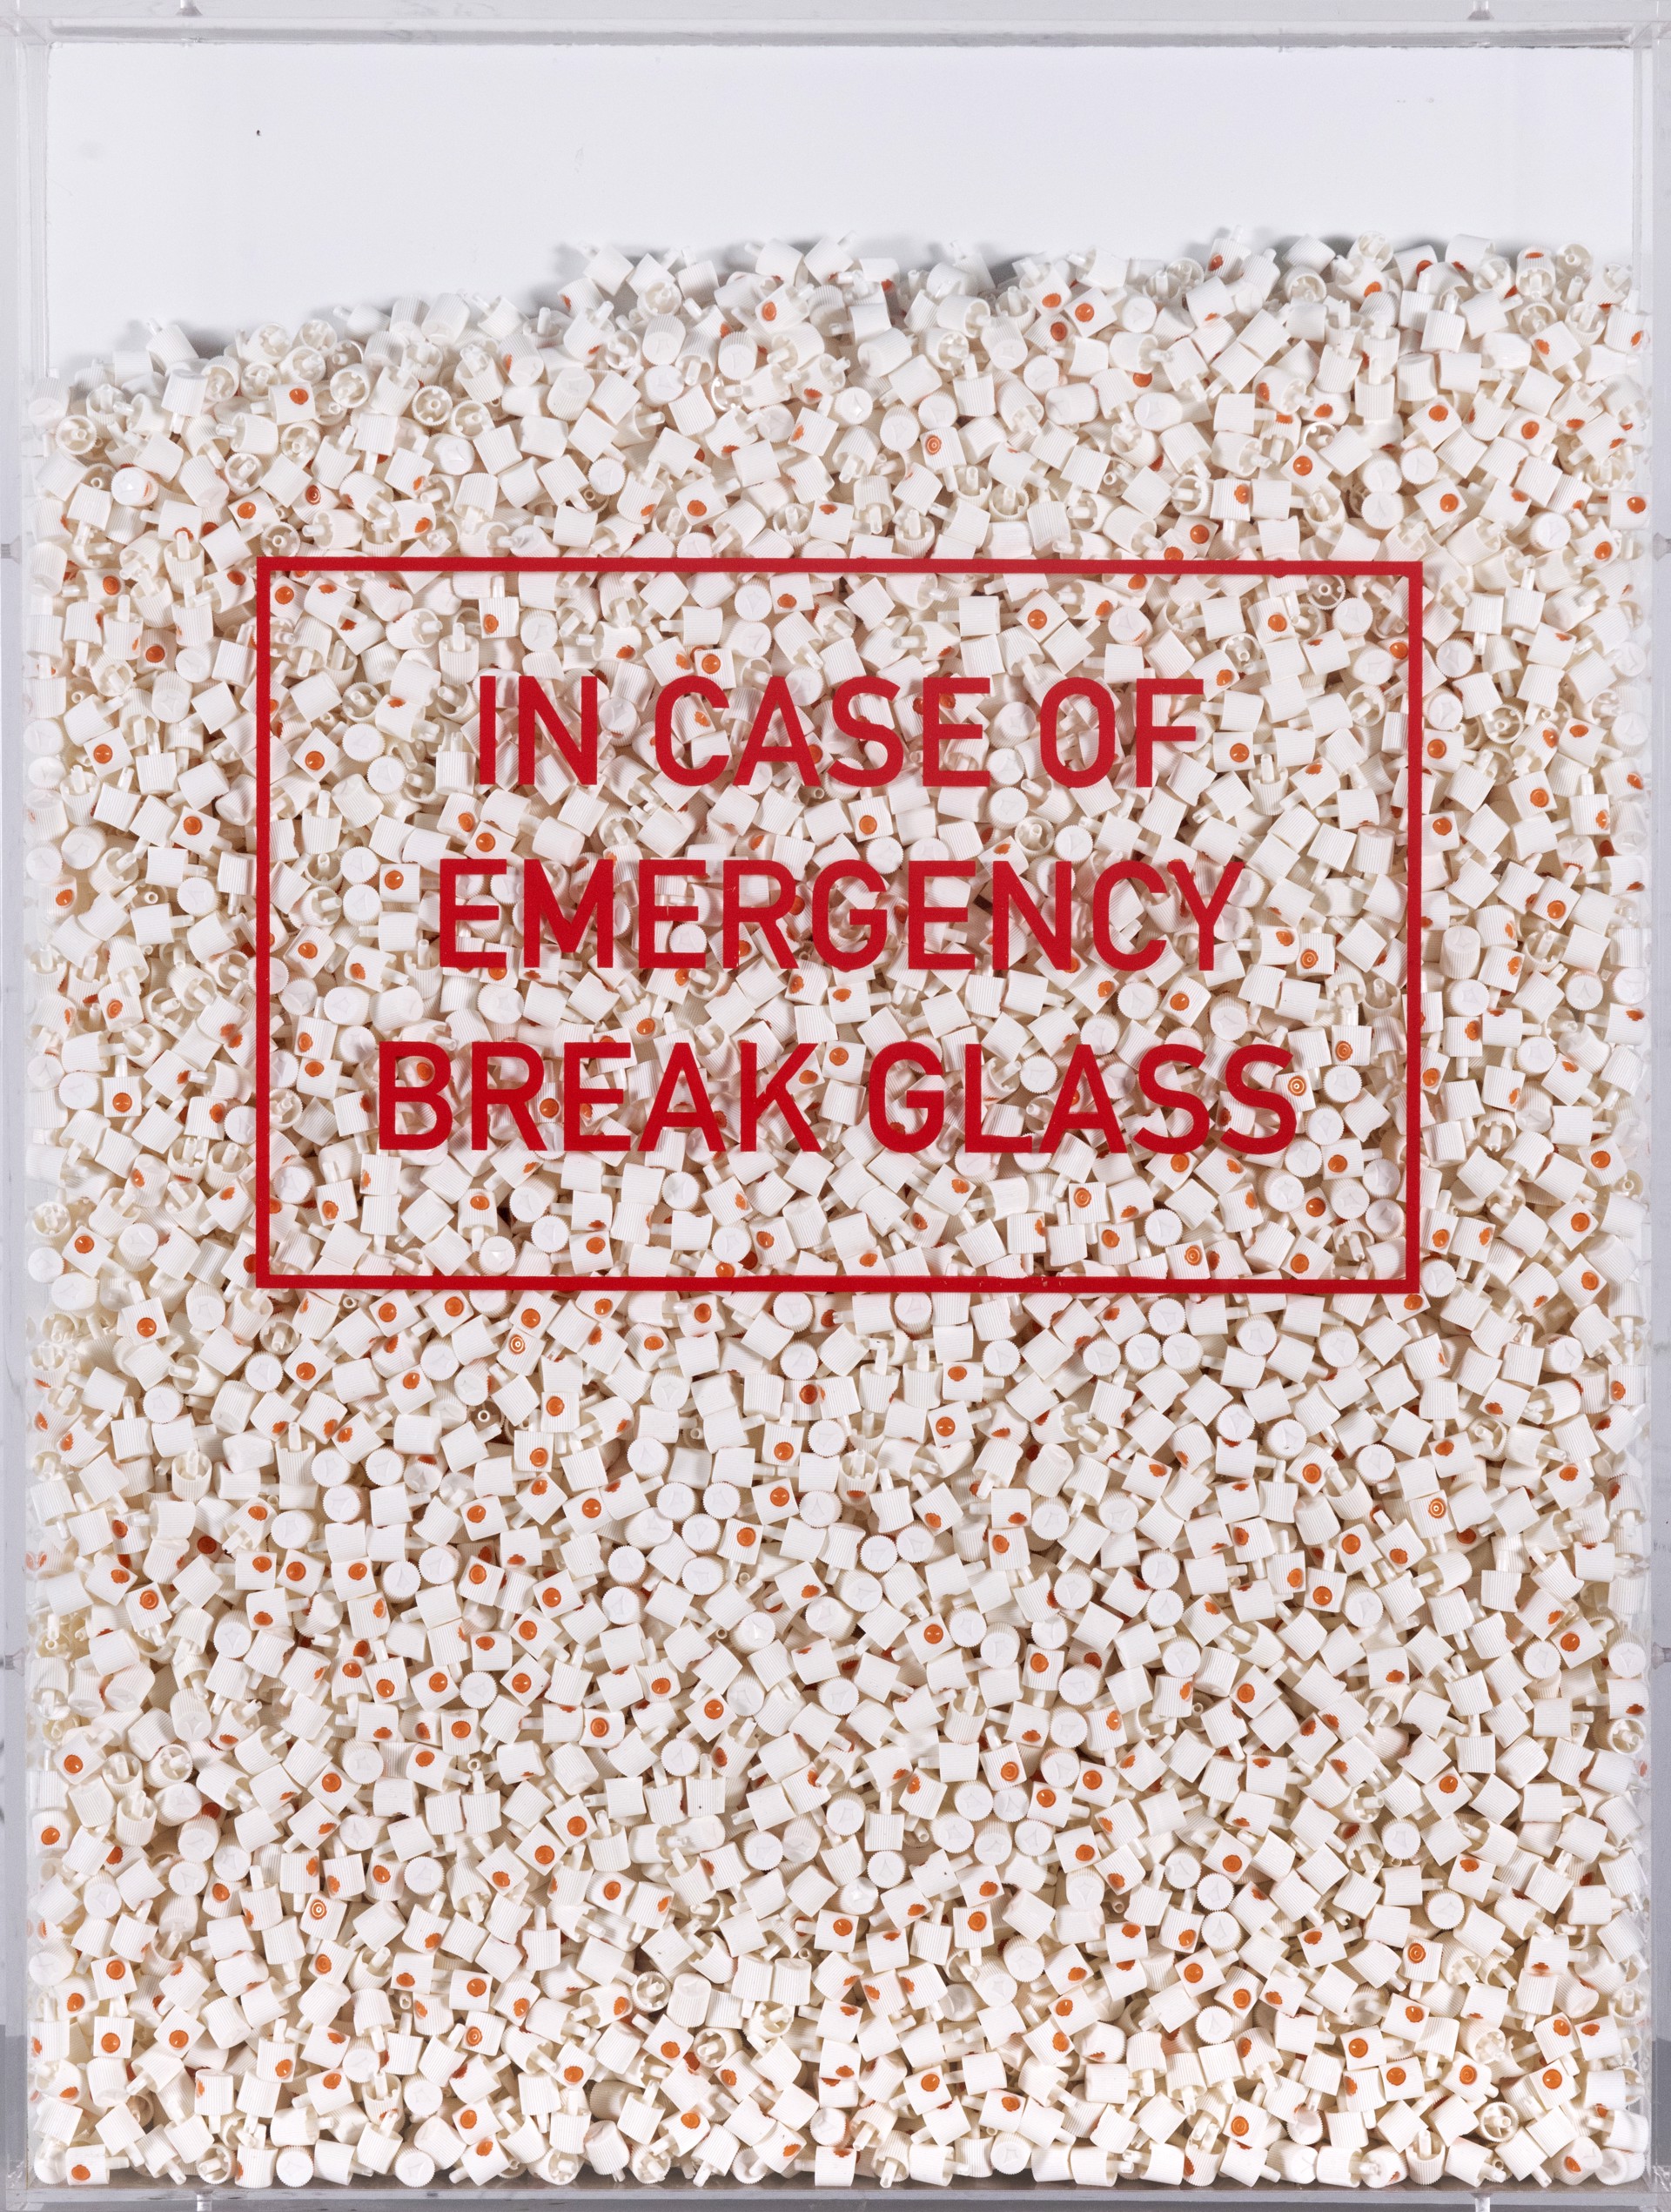 In Case of Emergency Break Glass by Risk